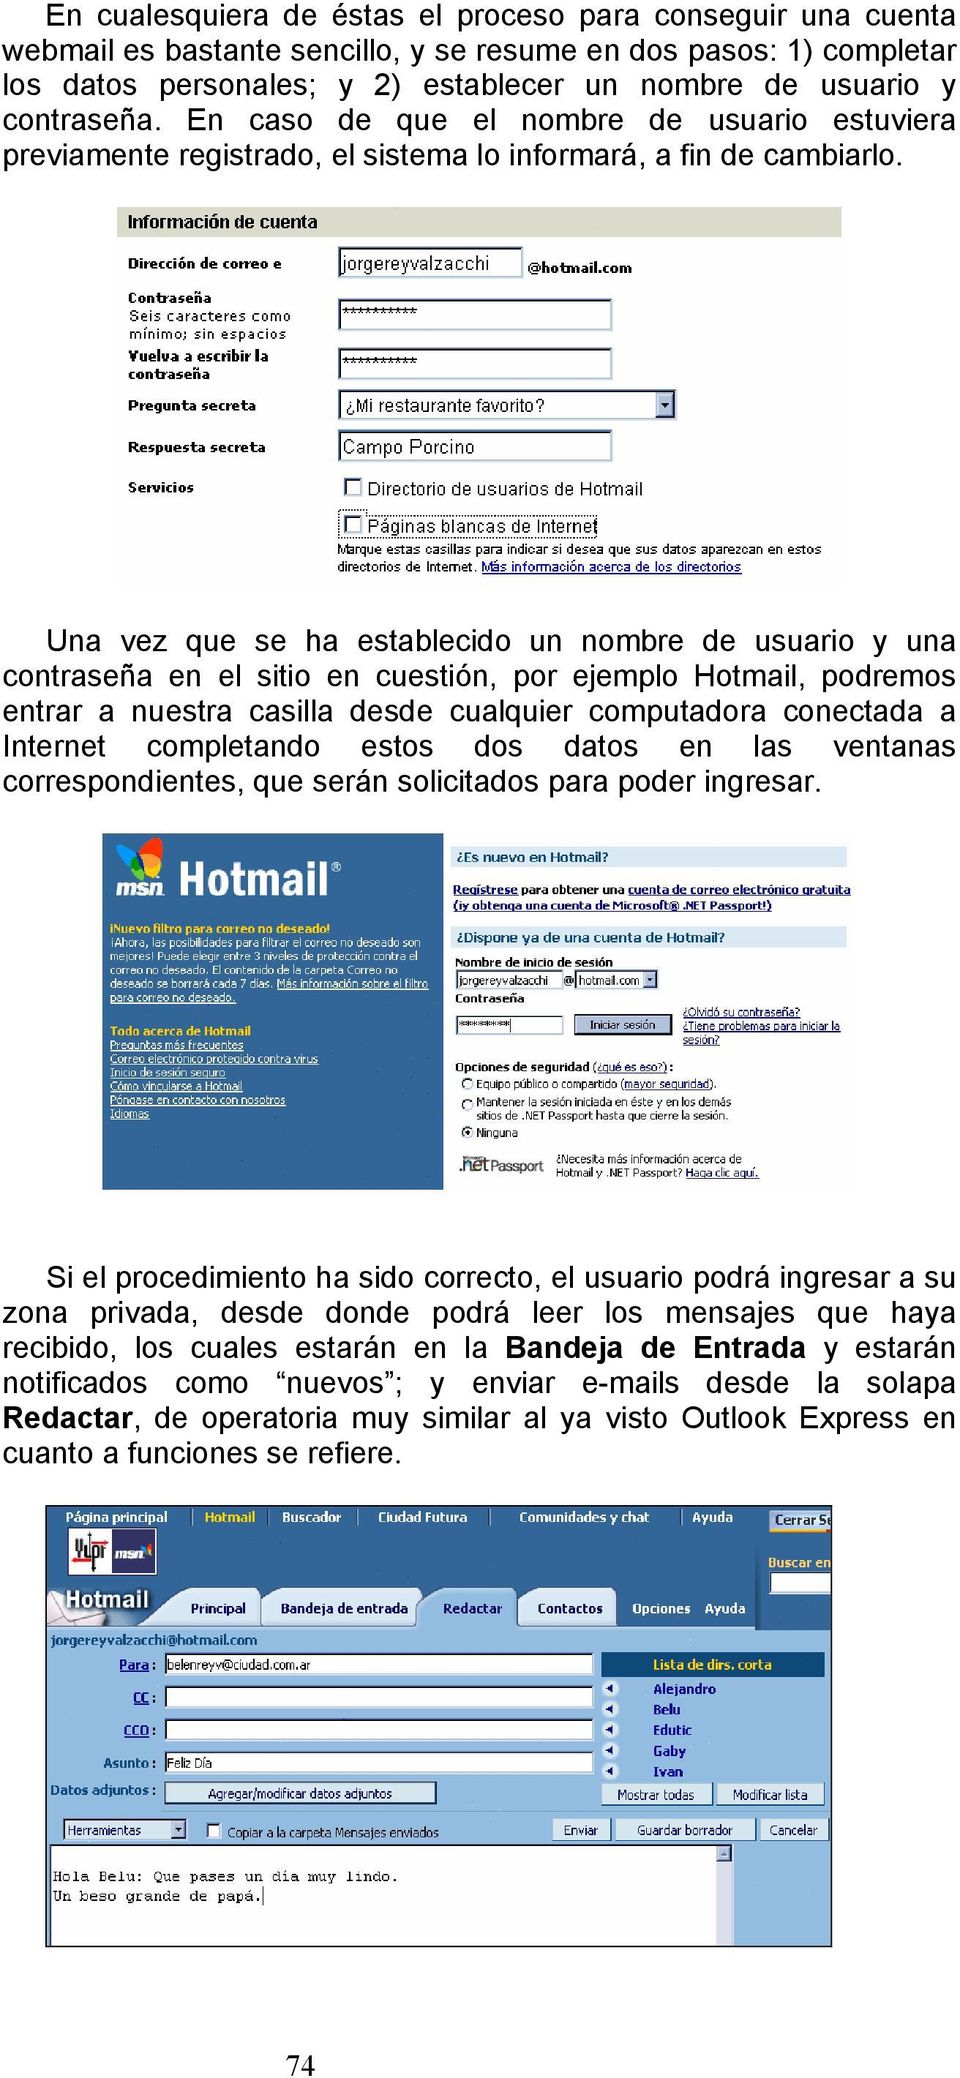 Una vez que se ha establecido un nombre de usuario y una contraseña en el sitio en cuestión, por ejemplo Hotmail, podremos entrar a nuestra casilla desde cualquier computadora conectada a Internet